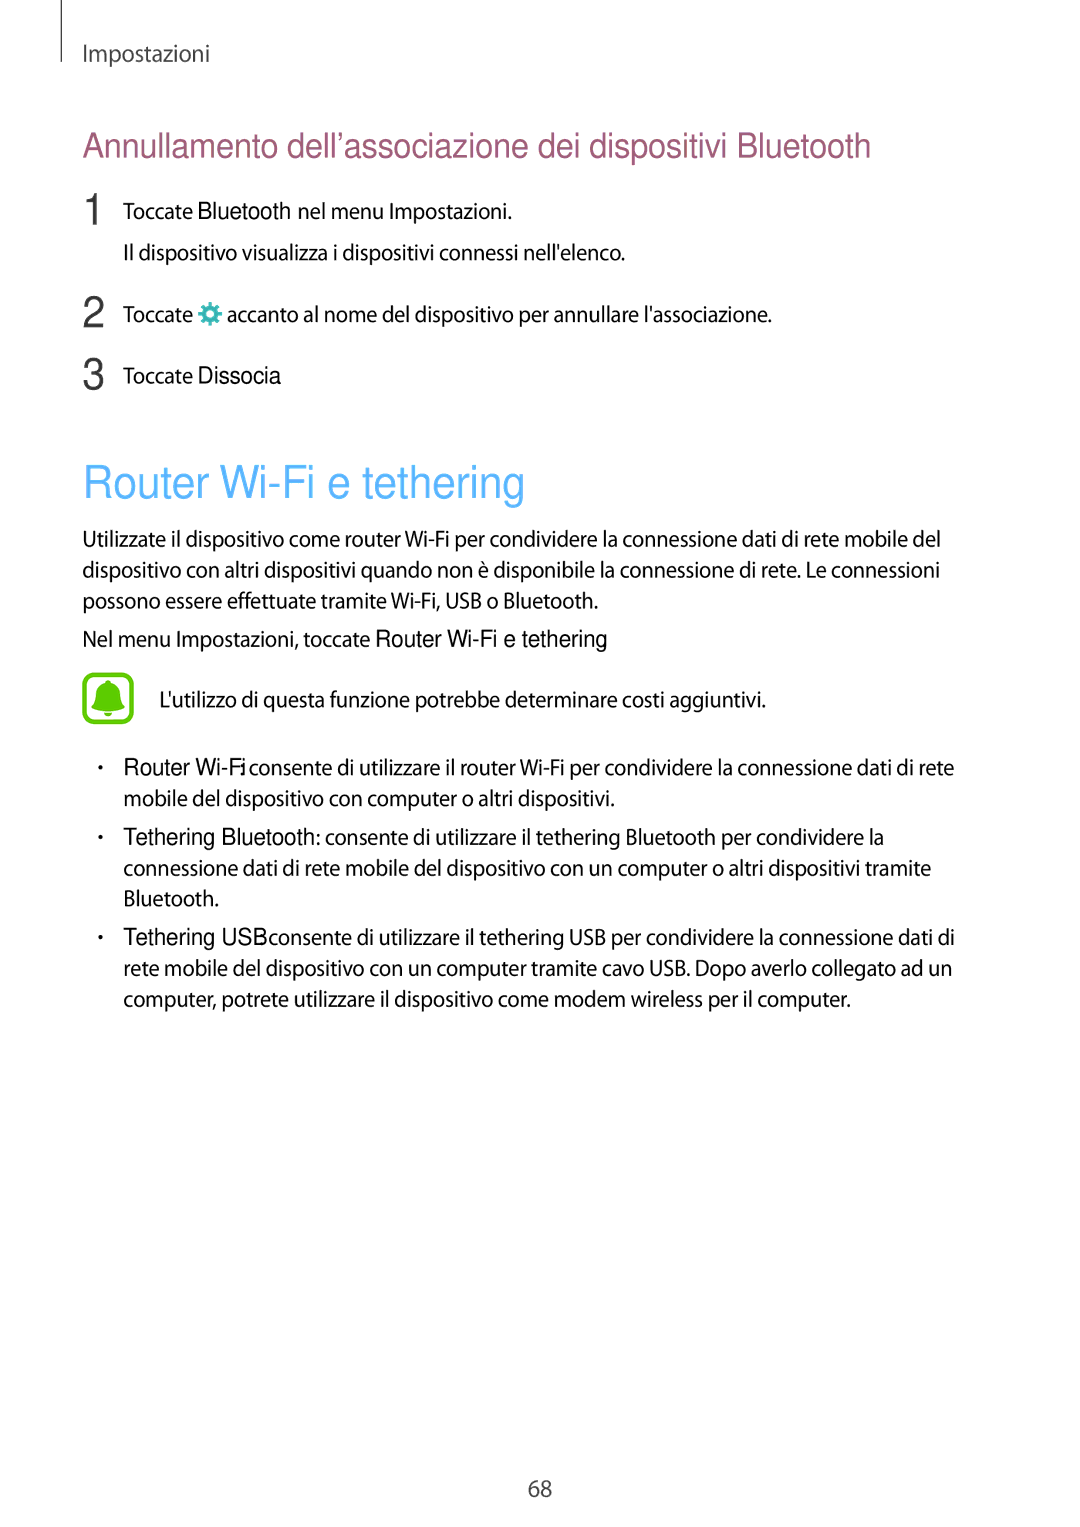 Samsung SM-T285NZKAITV manual Router Wi-Fi e tethering, Annullamento dellassociazione dei dispositivi Bluetooth 